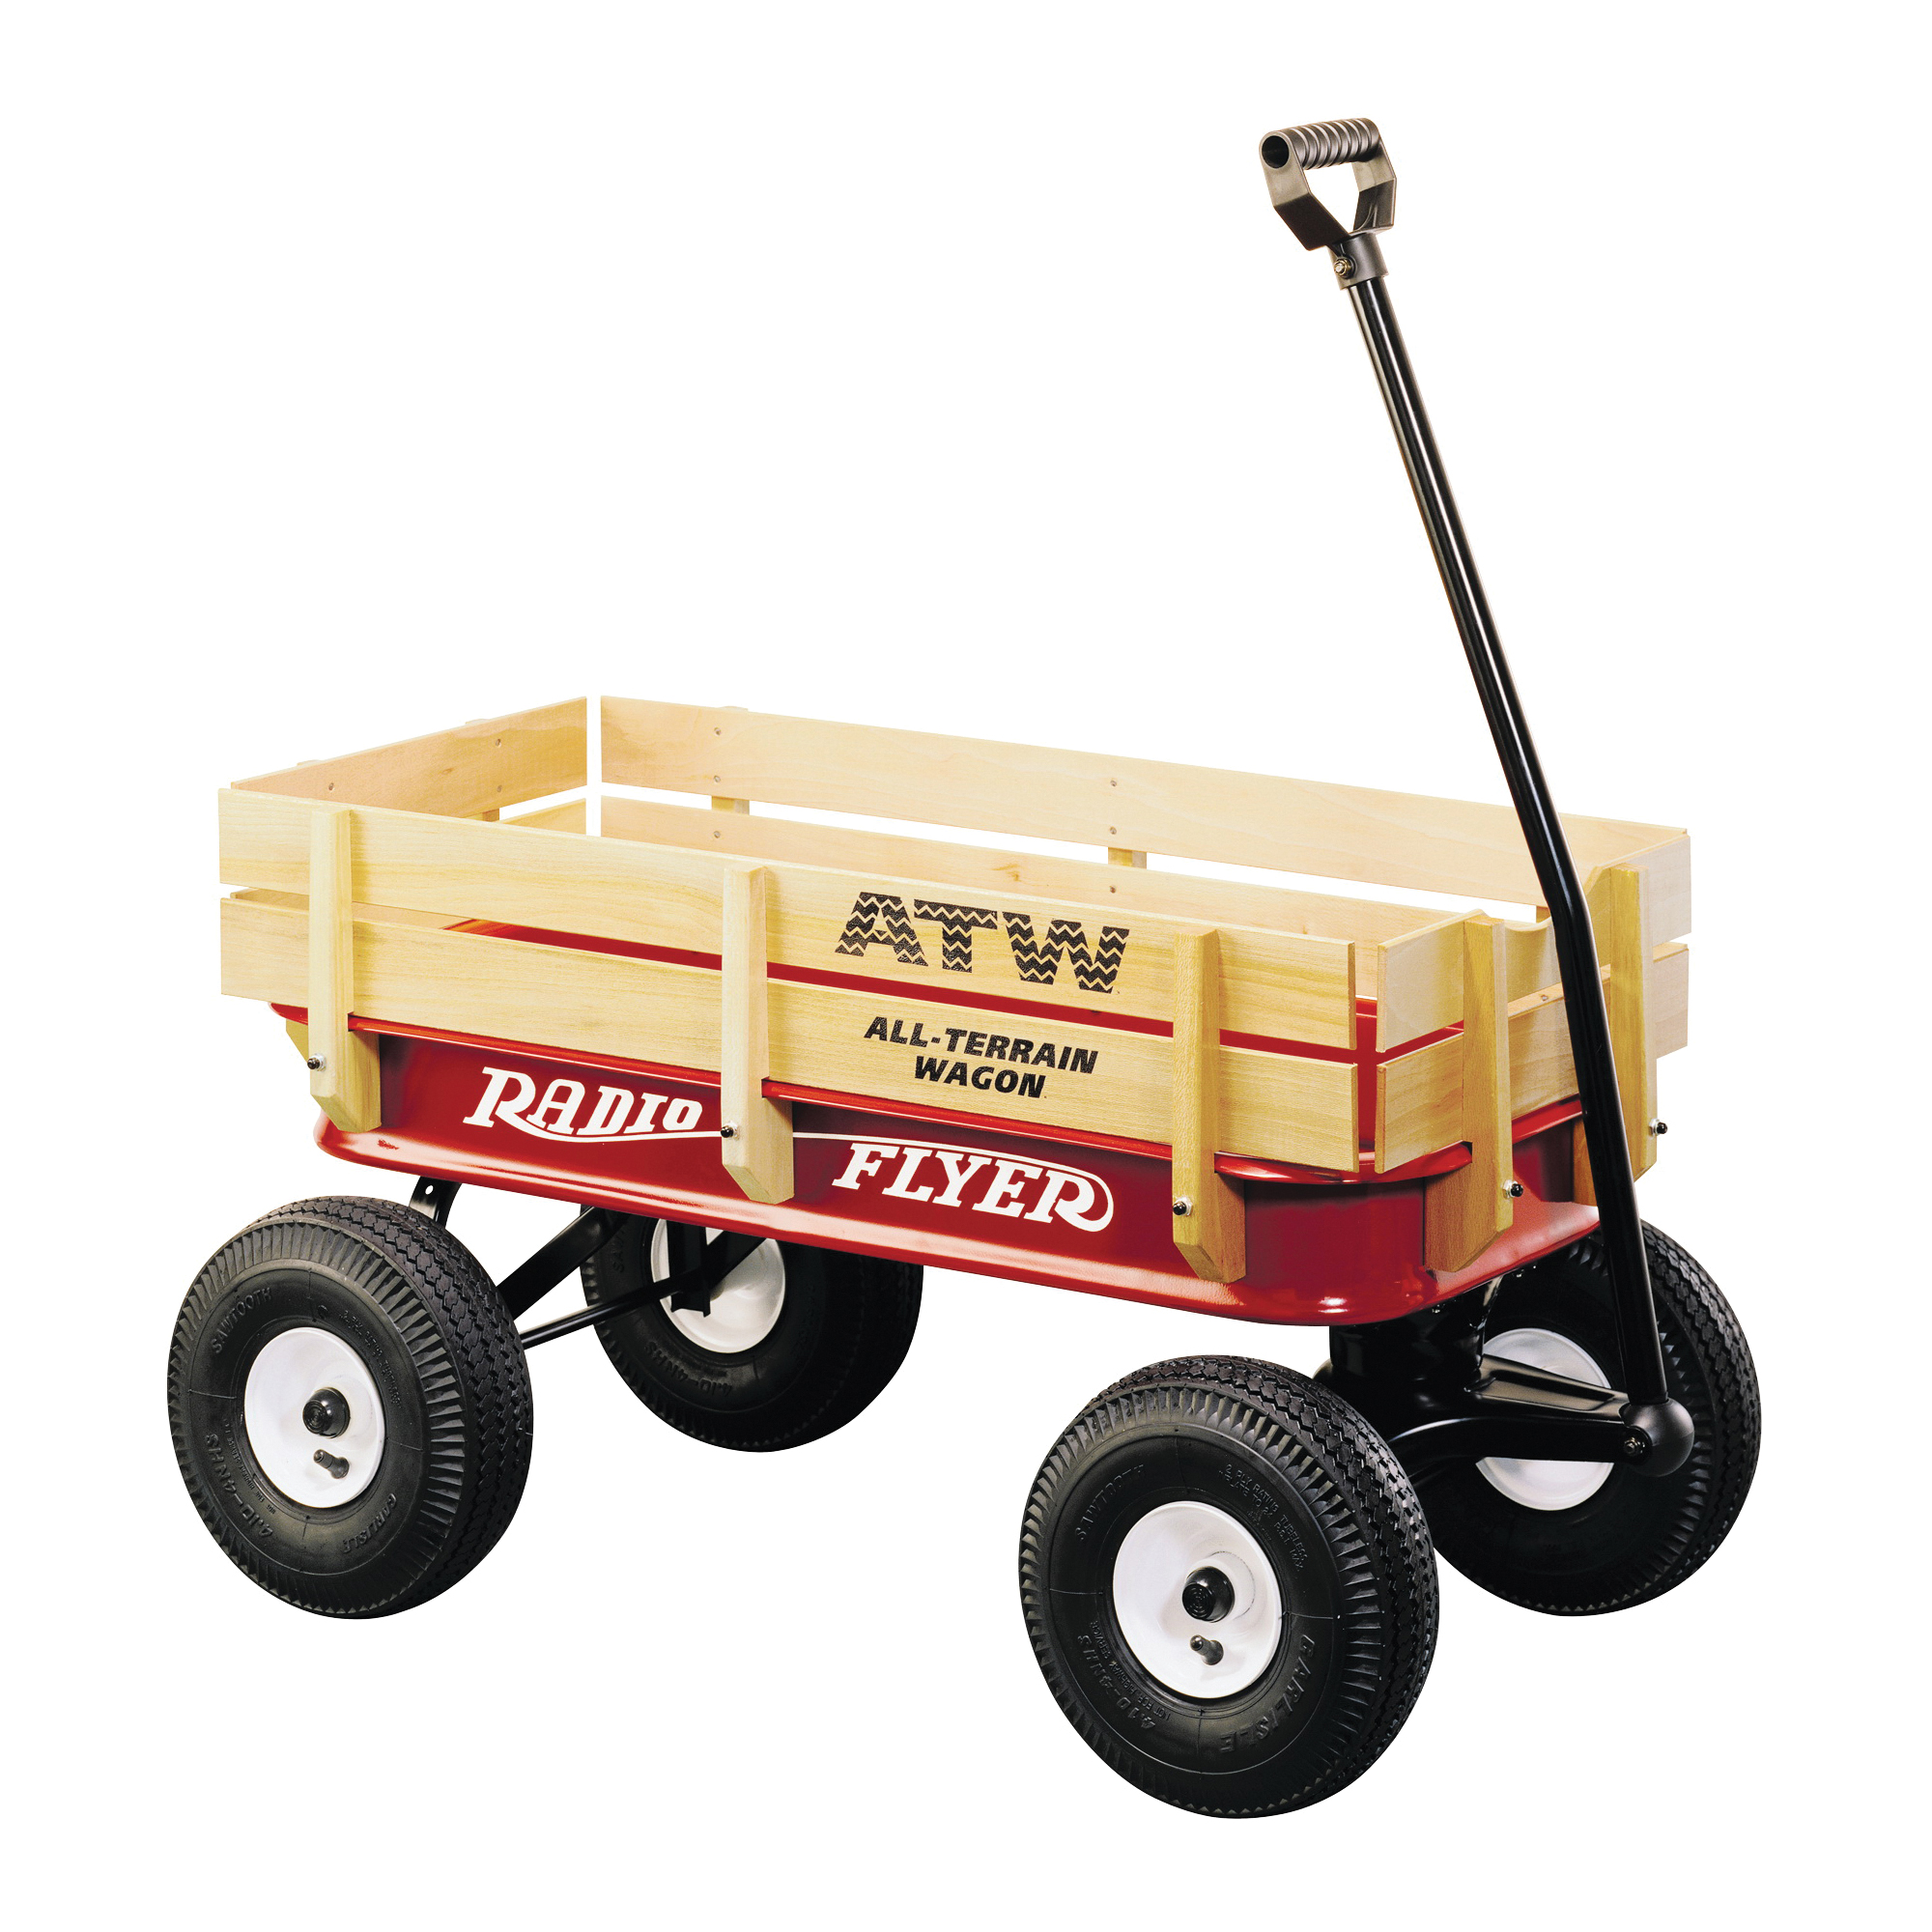 32Z Terrain Wagon, 200 lb, Steel/Wood, Red, Pneumatic Wheel